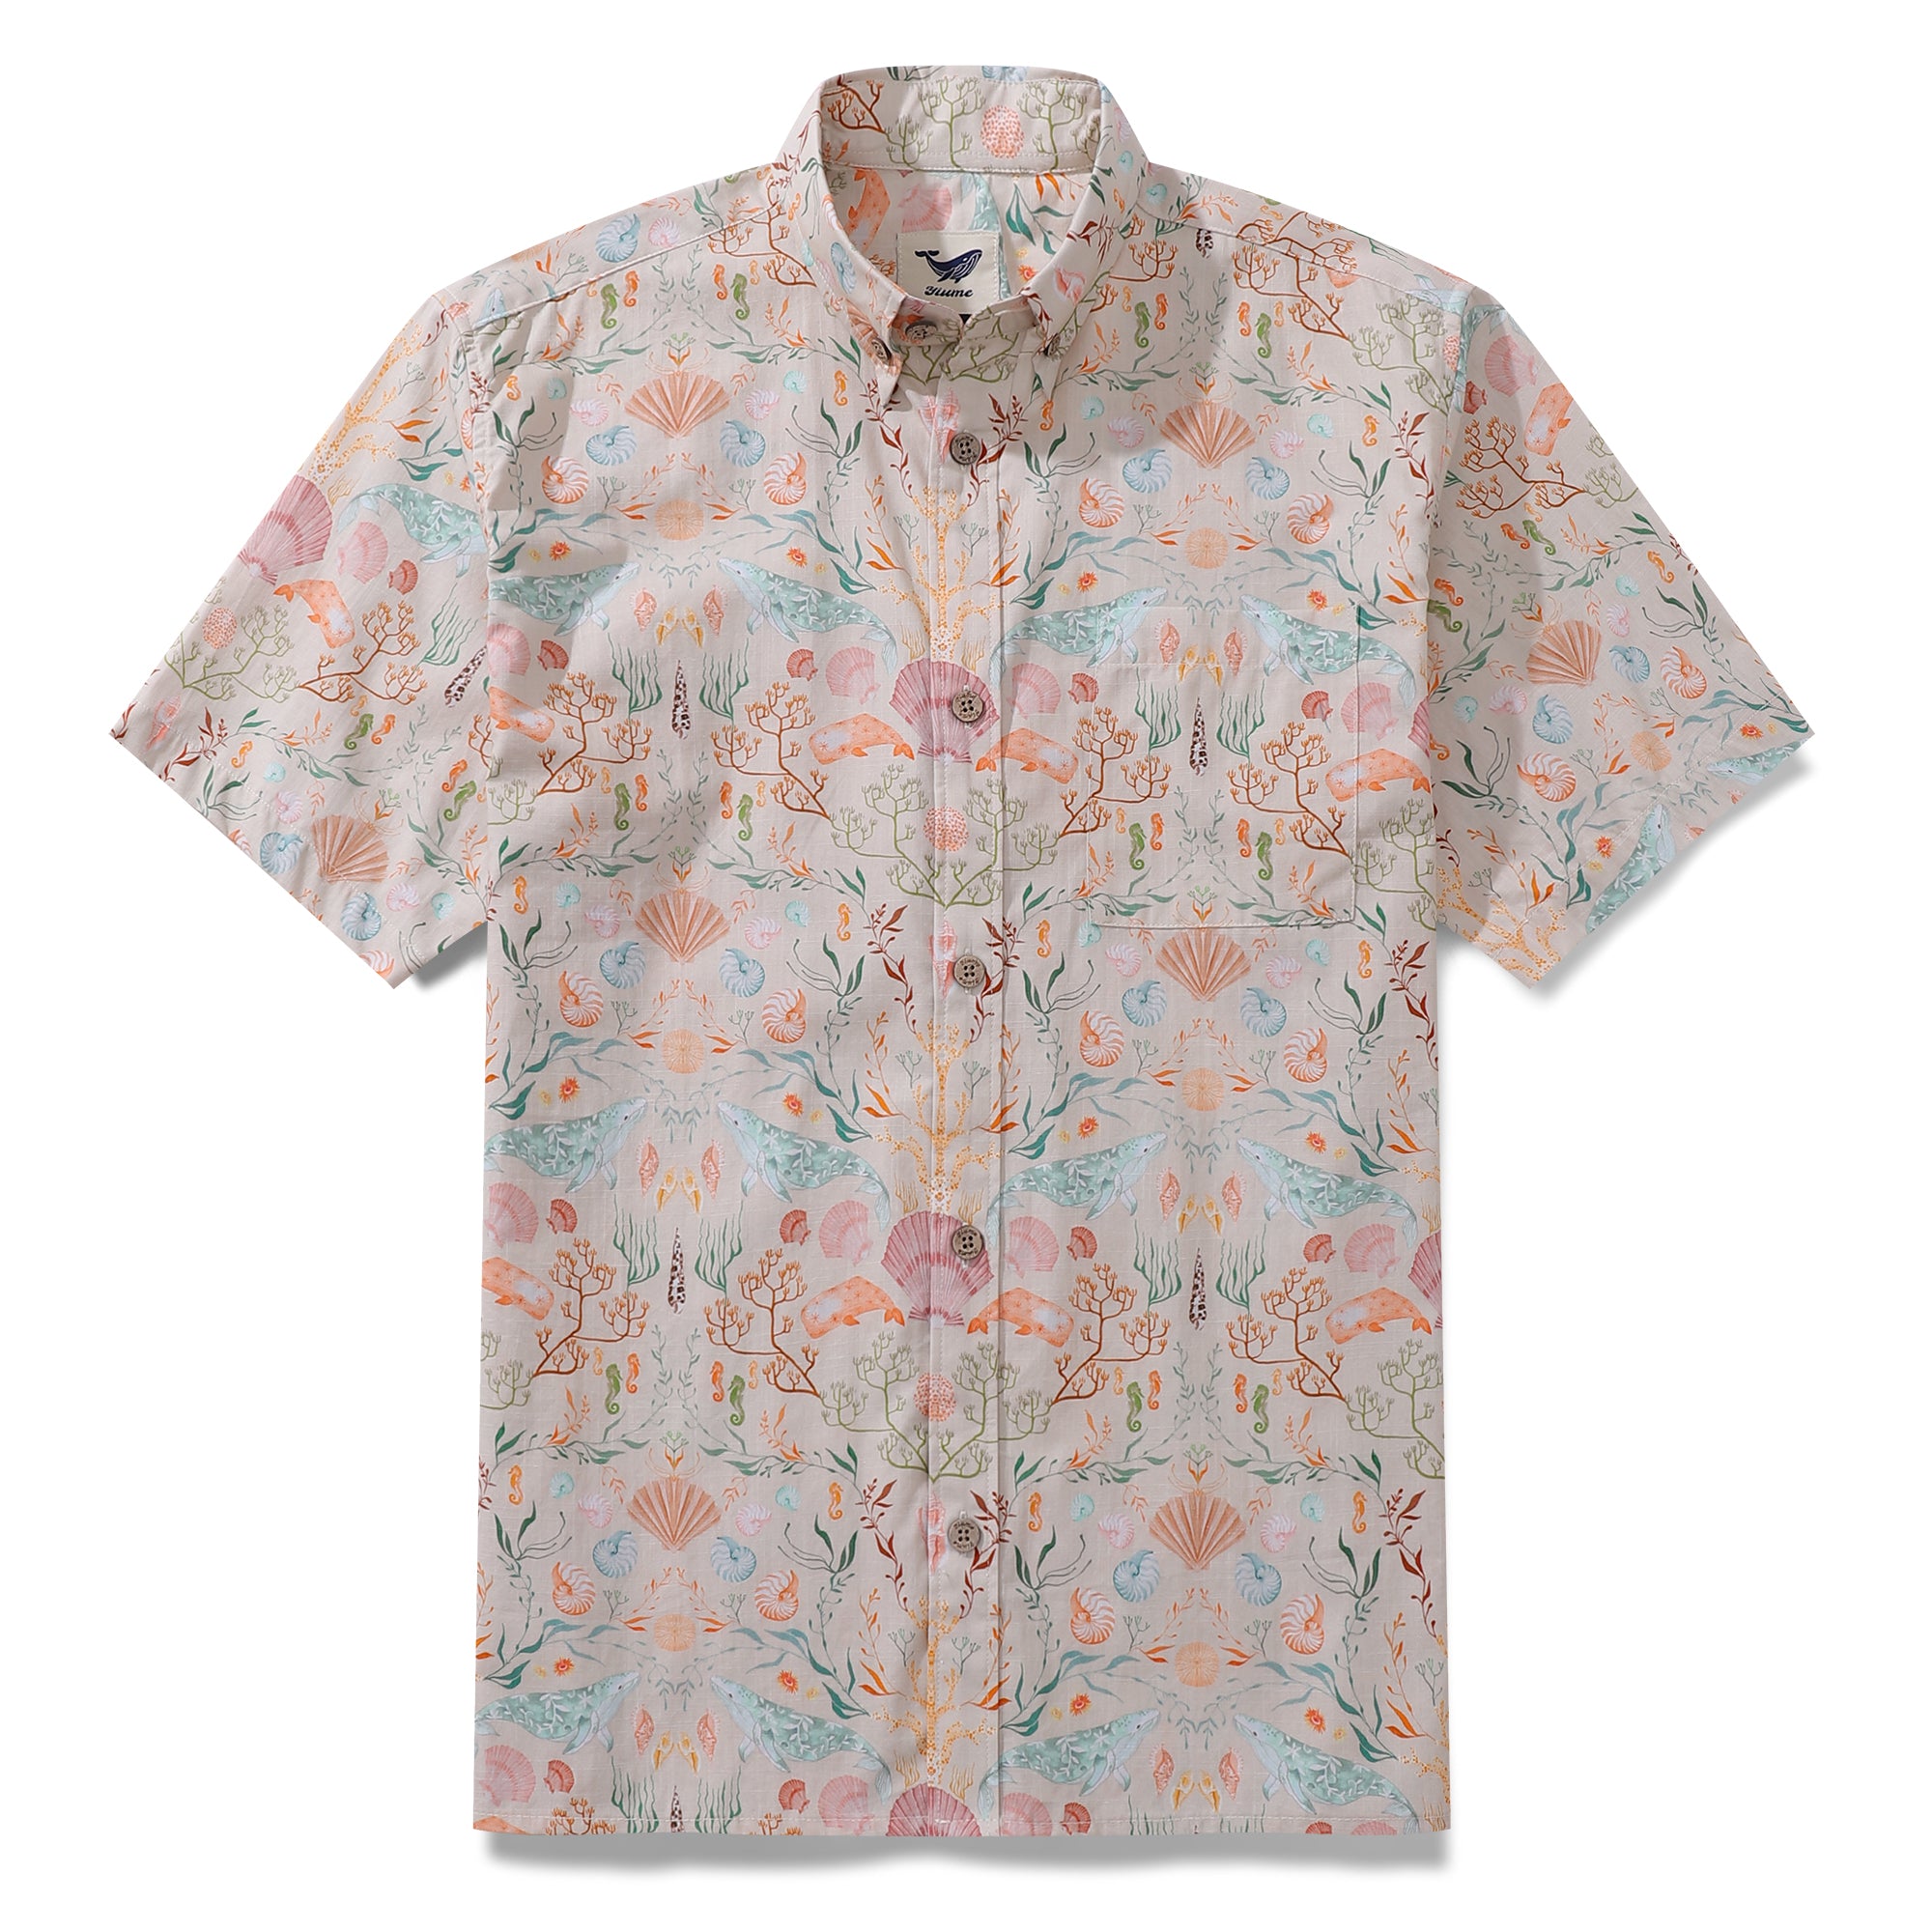 Camisa hawaiana para hombre Ocean Dream de Samantha O' Malley Camisa Aloha de manga corta con botones de algodón